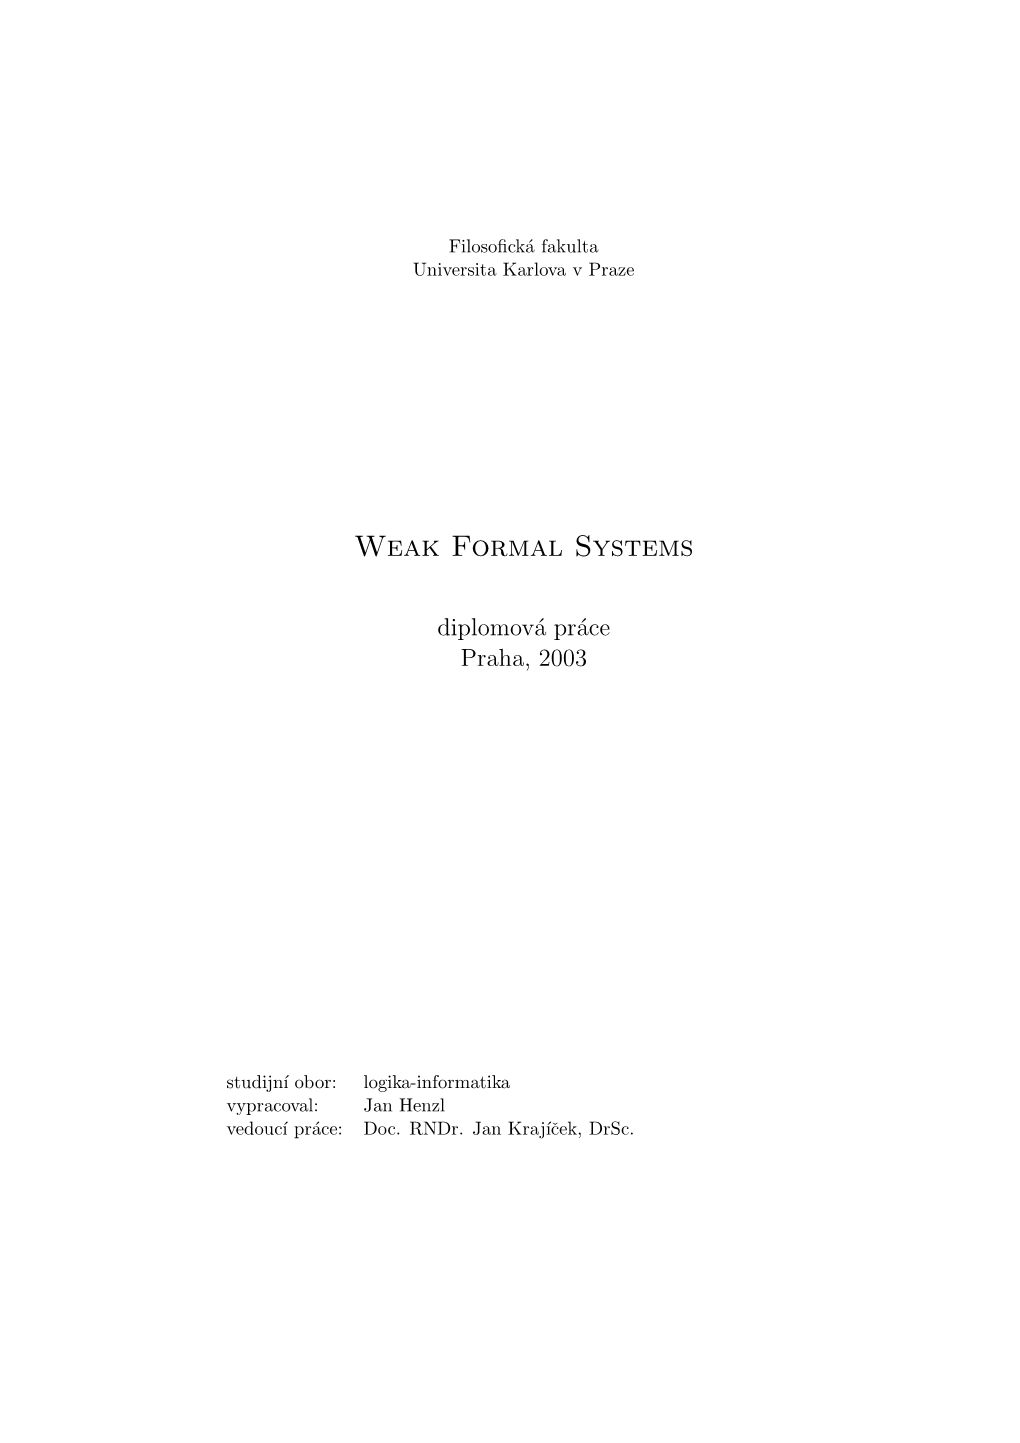 Weak Formal Systems